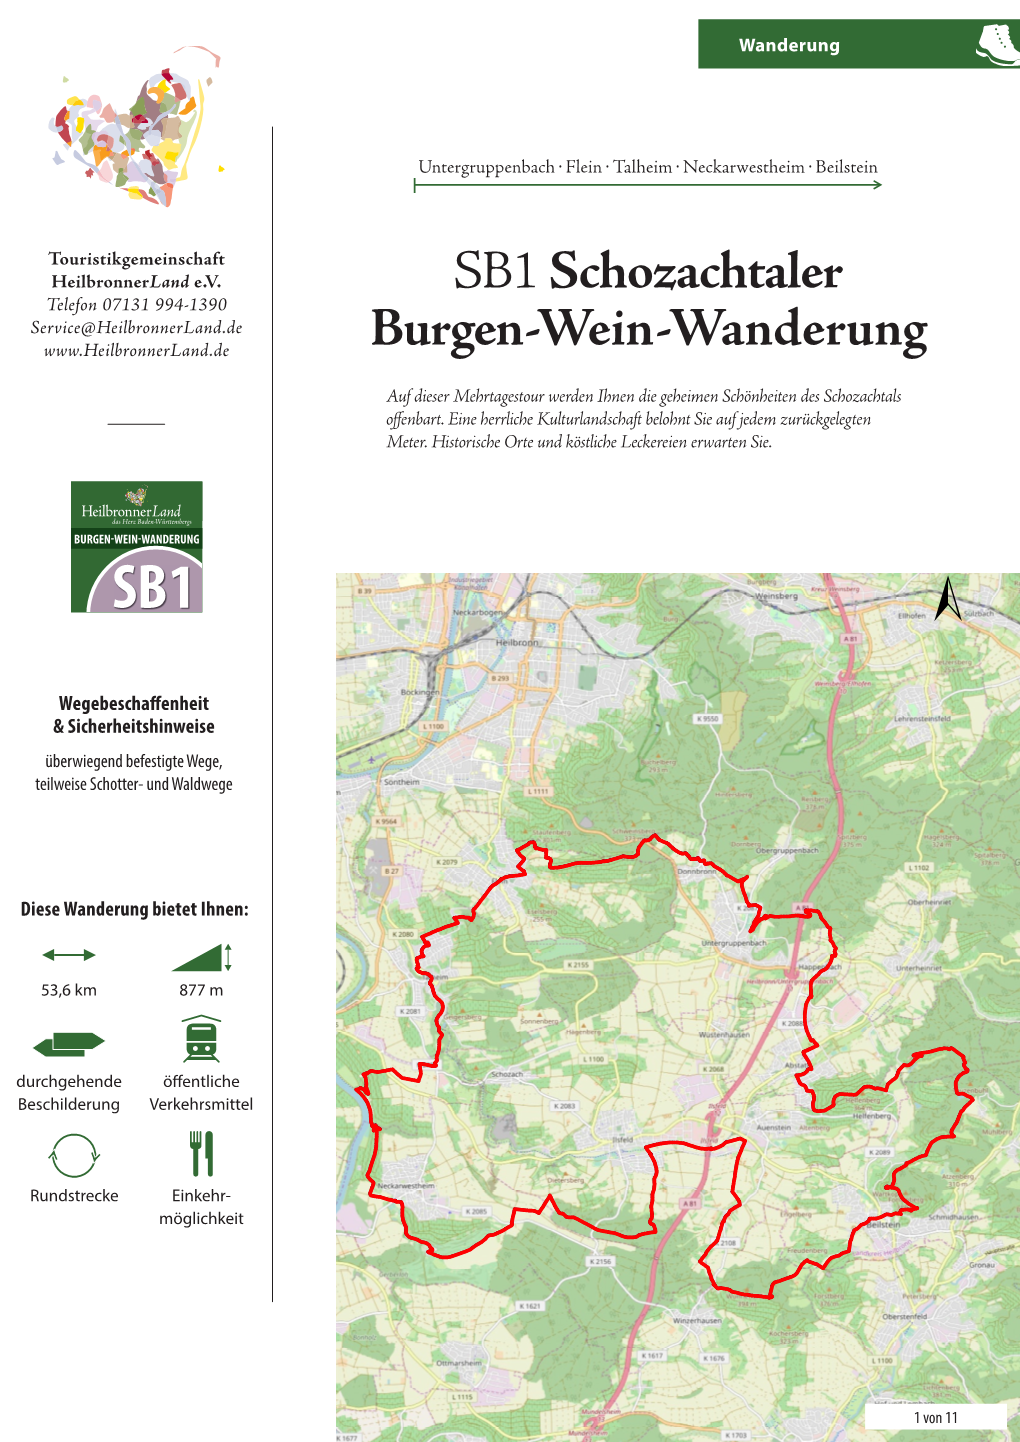 SB1 Schozachtaler Burgen-Wein-Wanderung.Indd